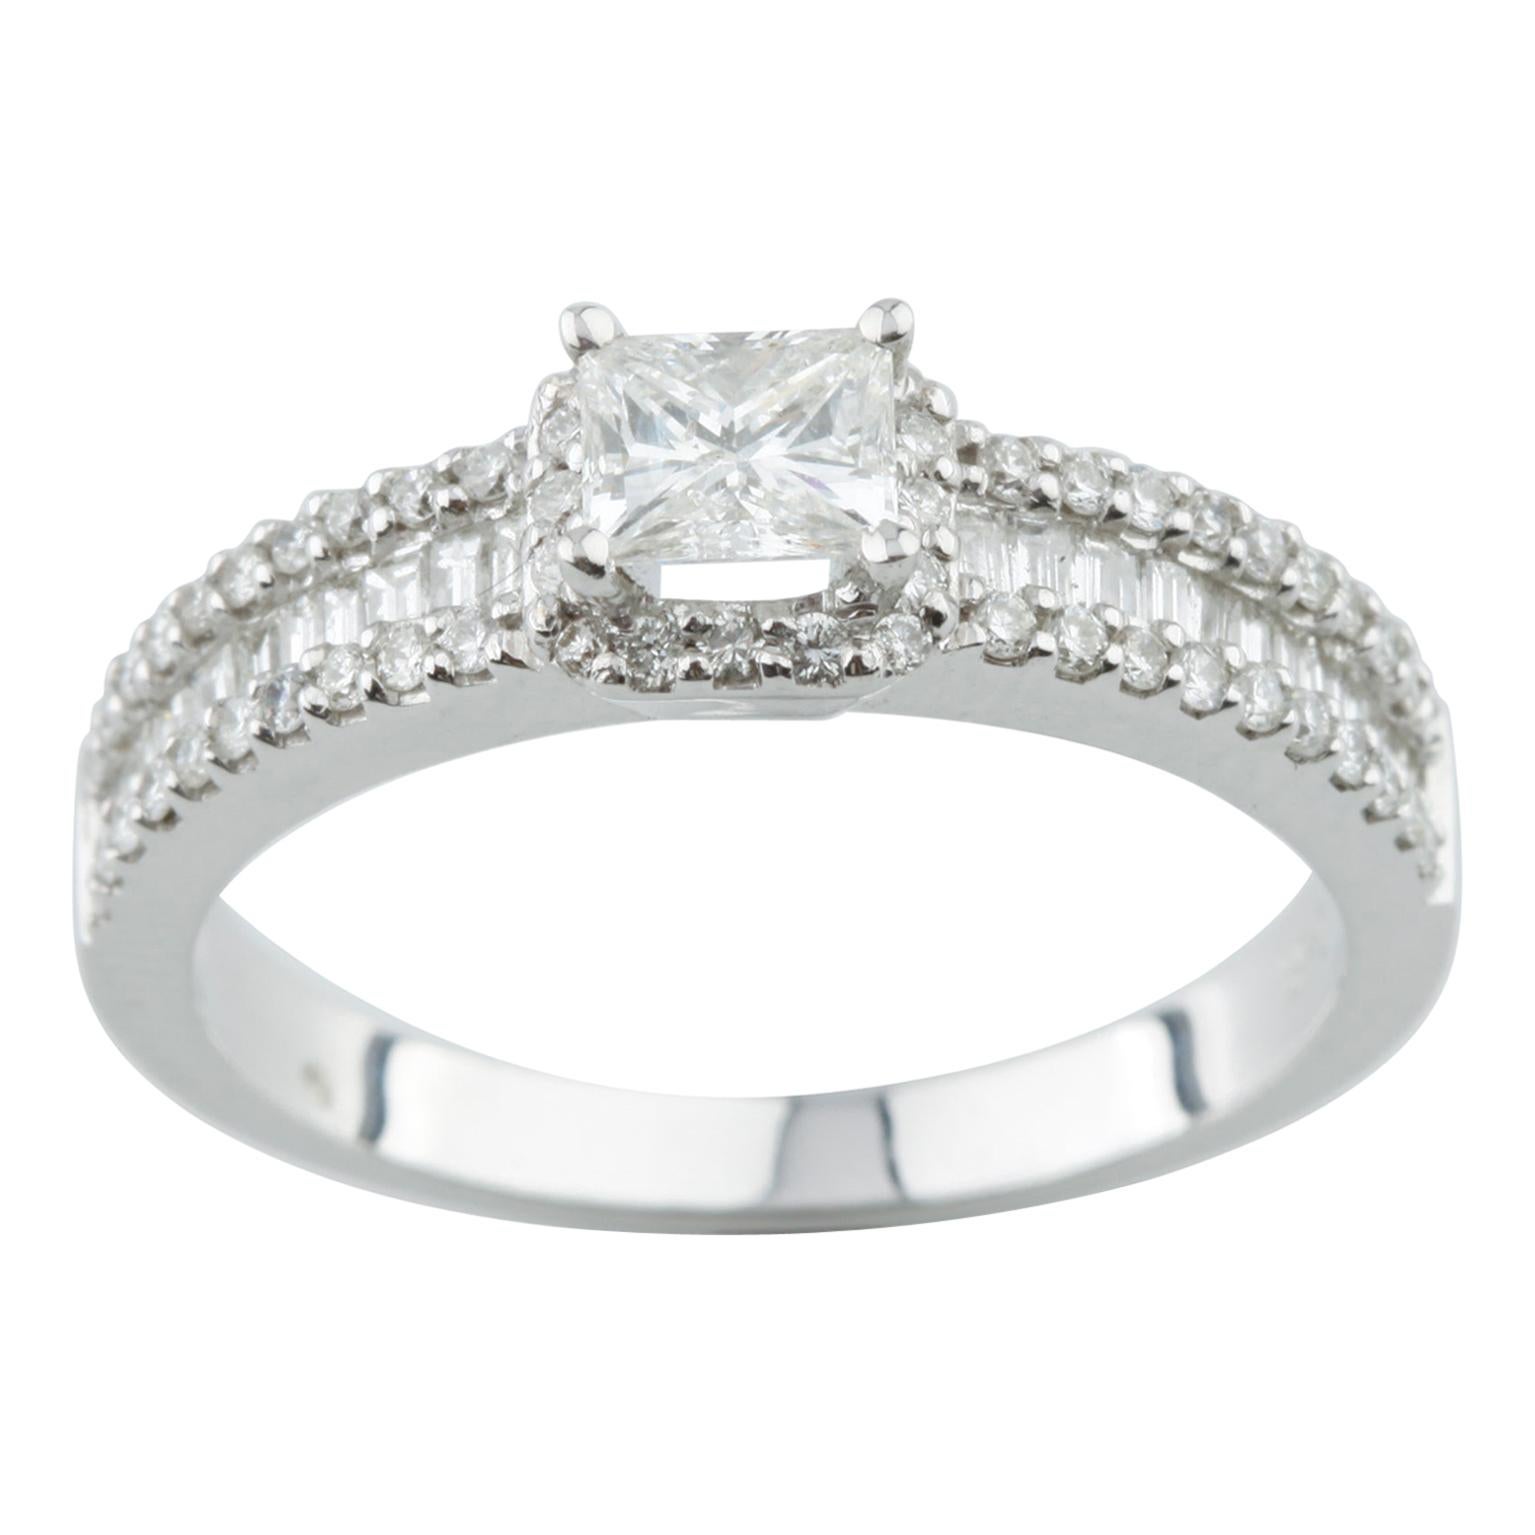 0.97 Carat Princes Cut Diamond Engagement Ring in 14 Karat White Gold